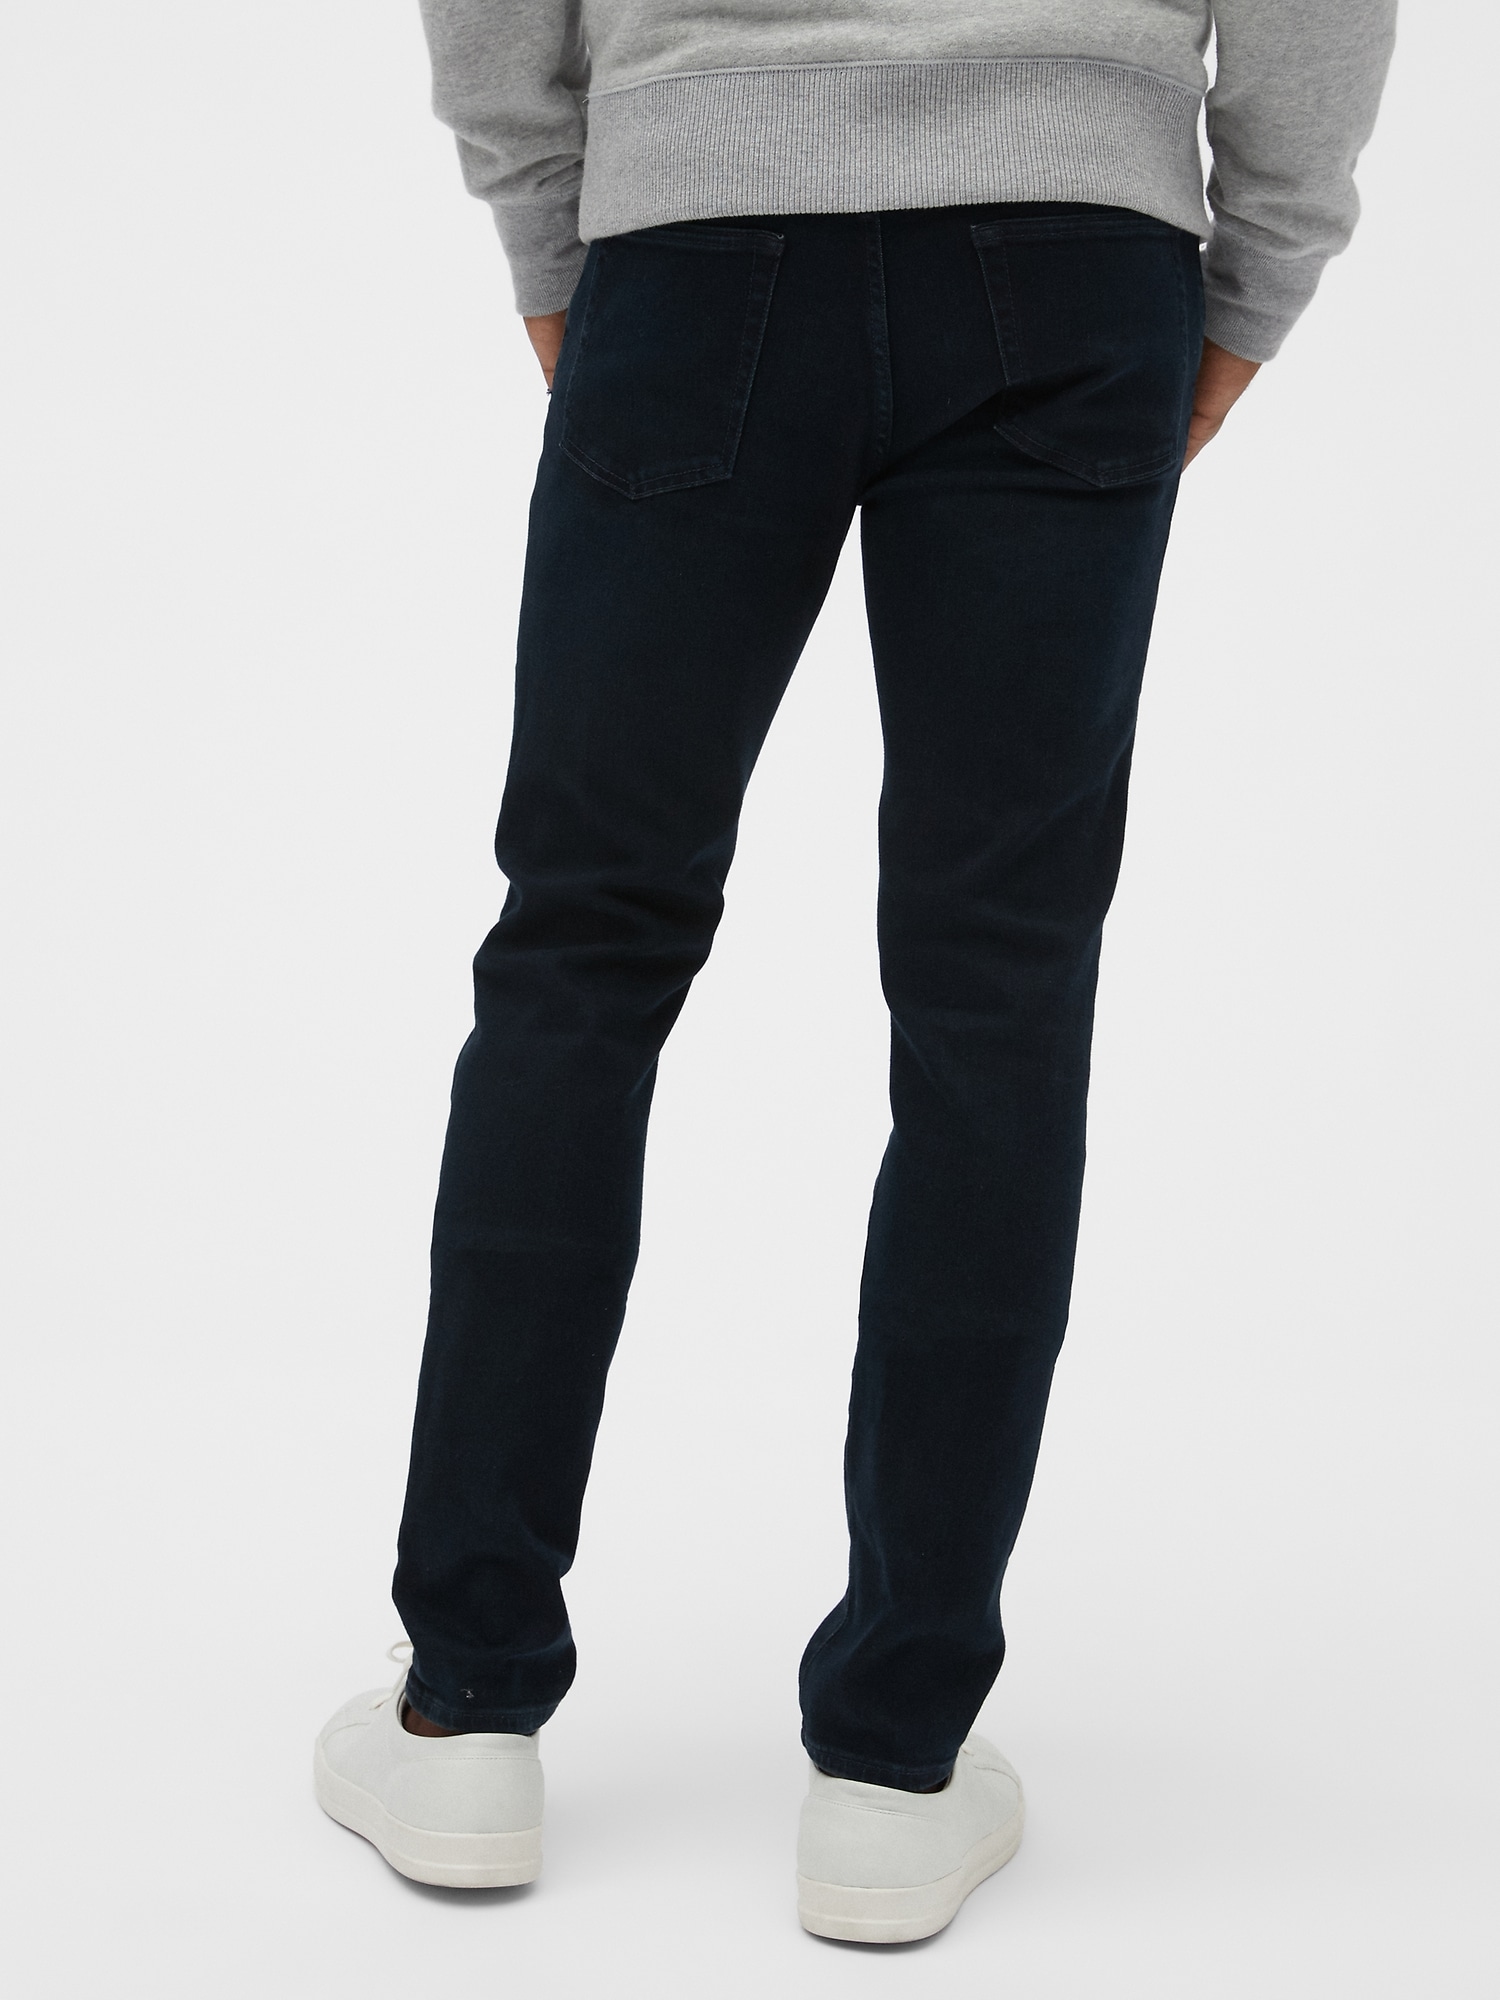 Soft Wear Skinny Jeans with GapFlex